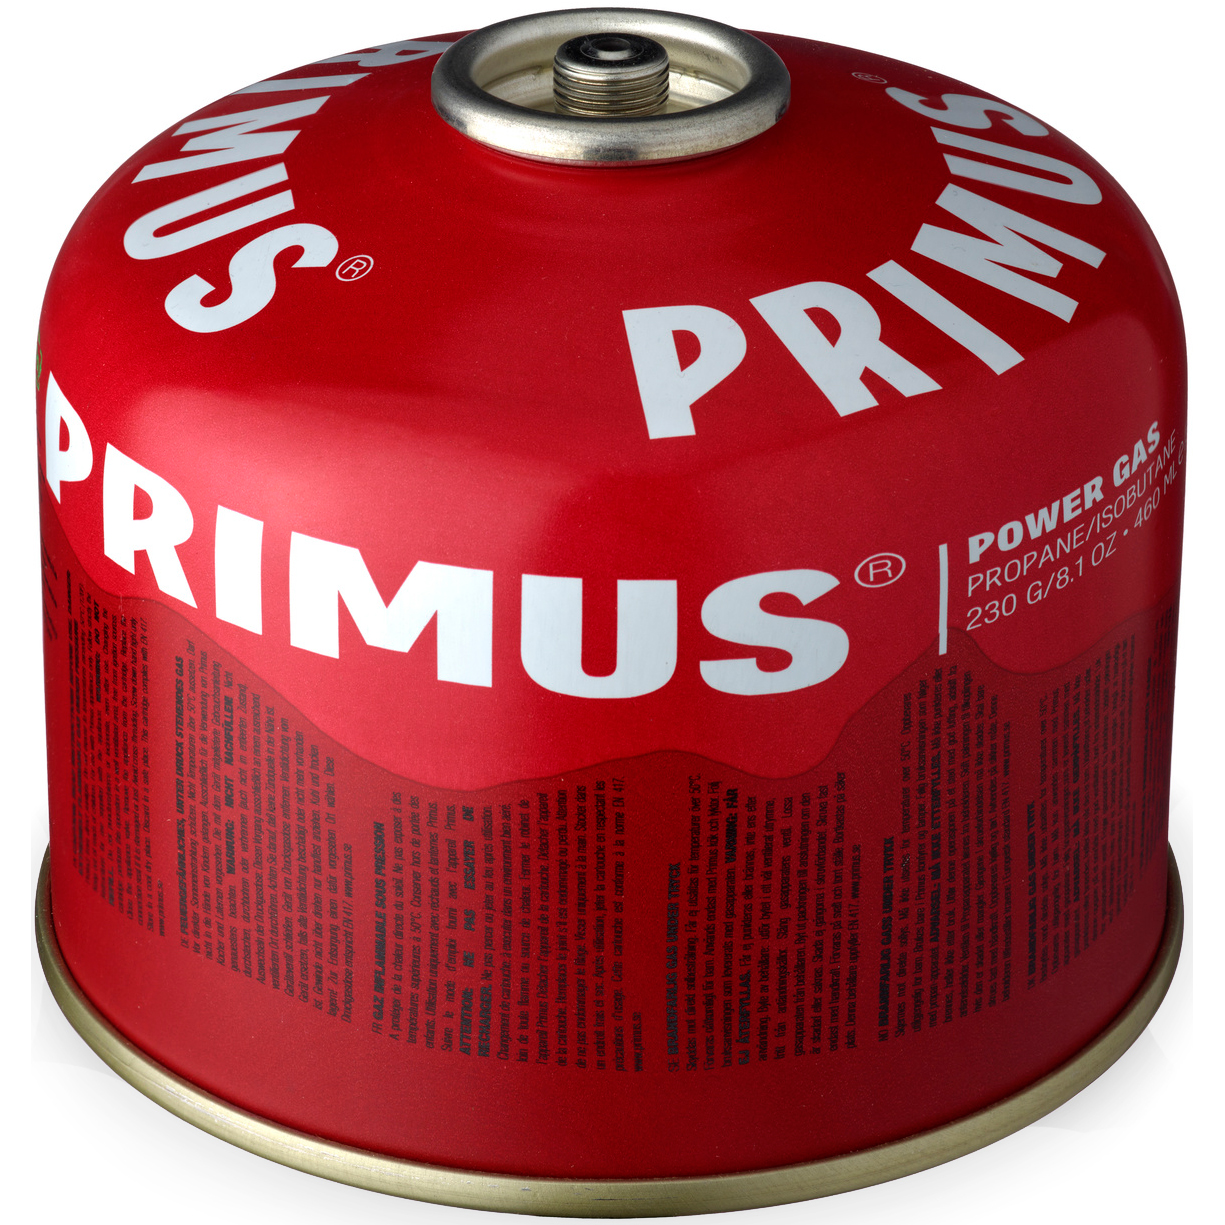 Produktbild von Primus Power Gaskartusche - 230g